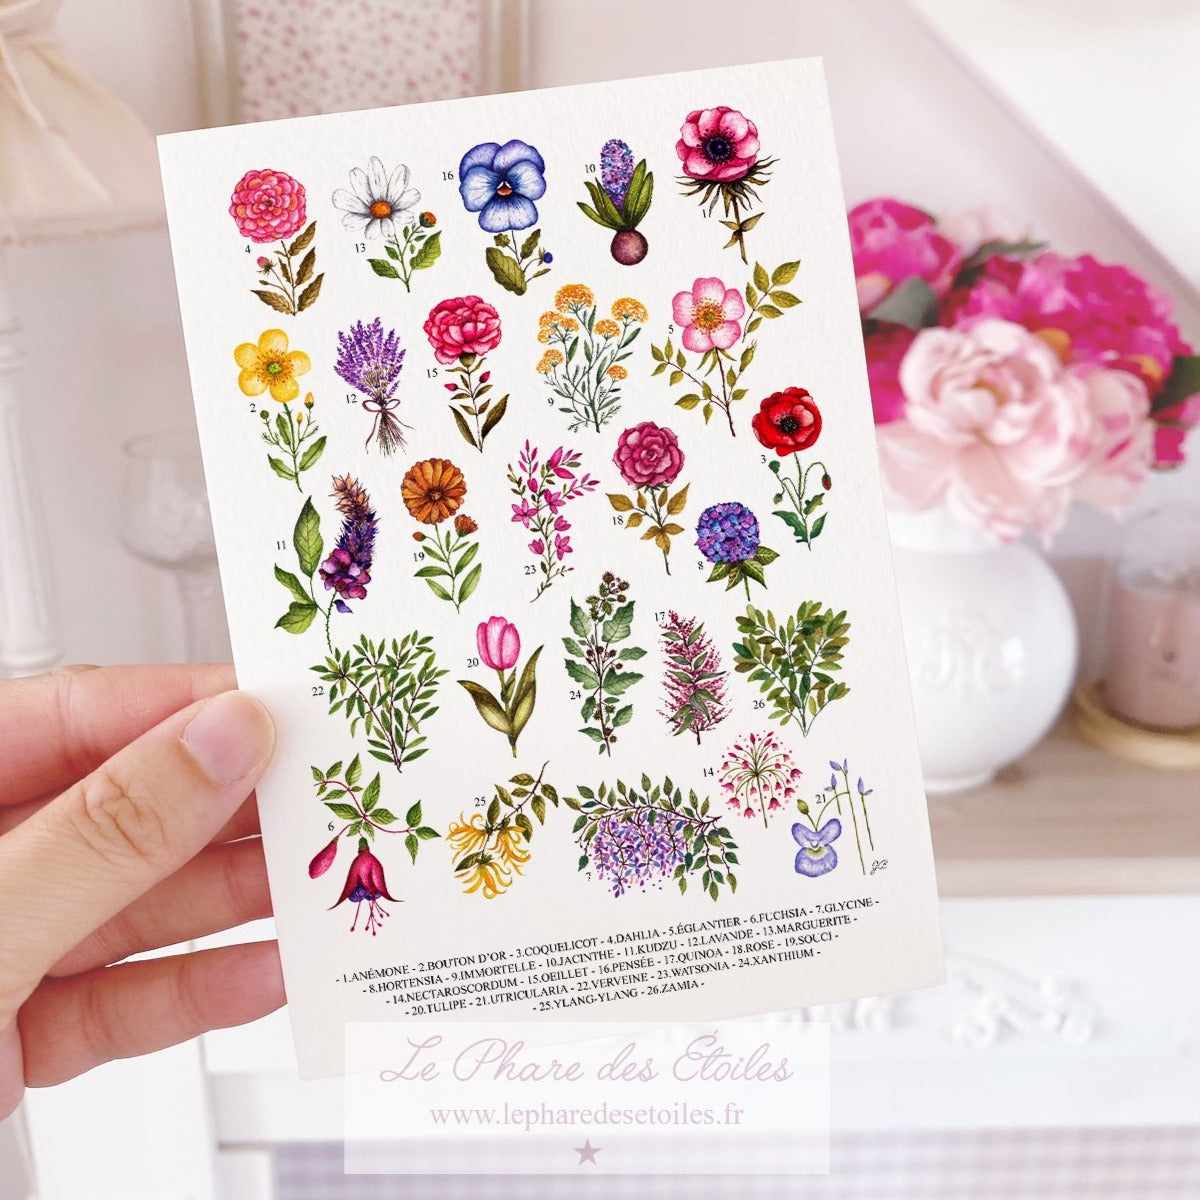 Carte illustrée à l'aquarelle sur le thème du printemps, des fleurs et de la botanique. Format A6 carte postale. Enveloppe offerte sur simple demande.